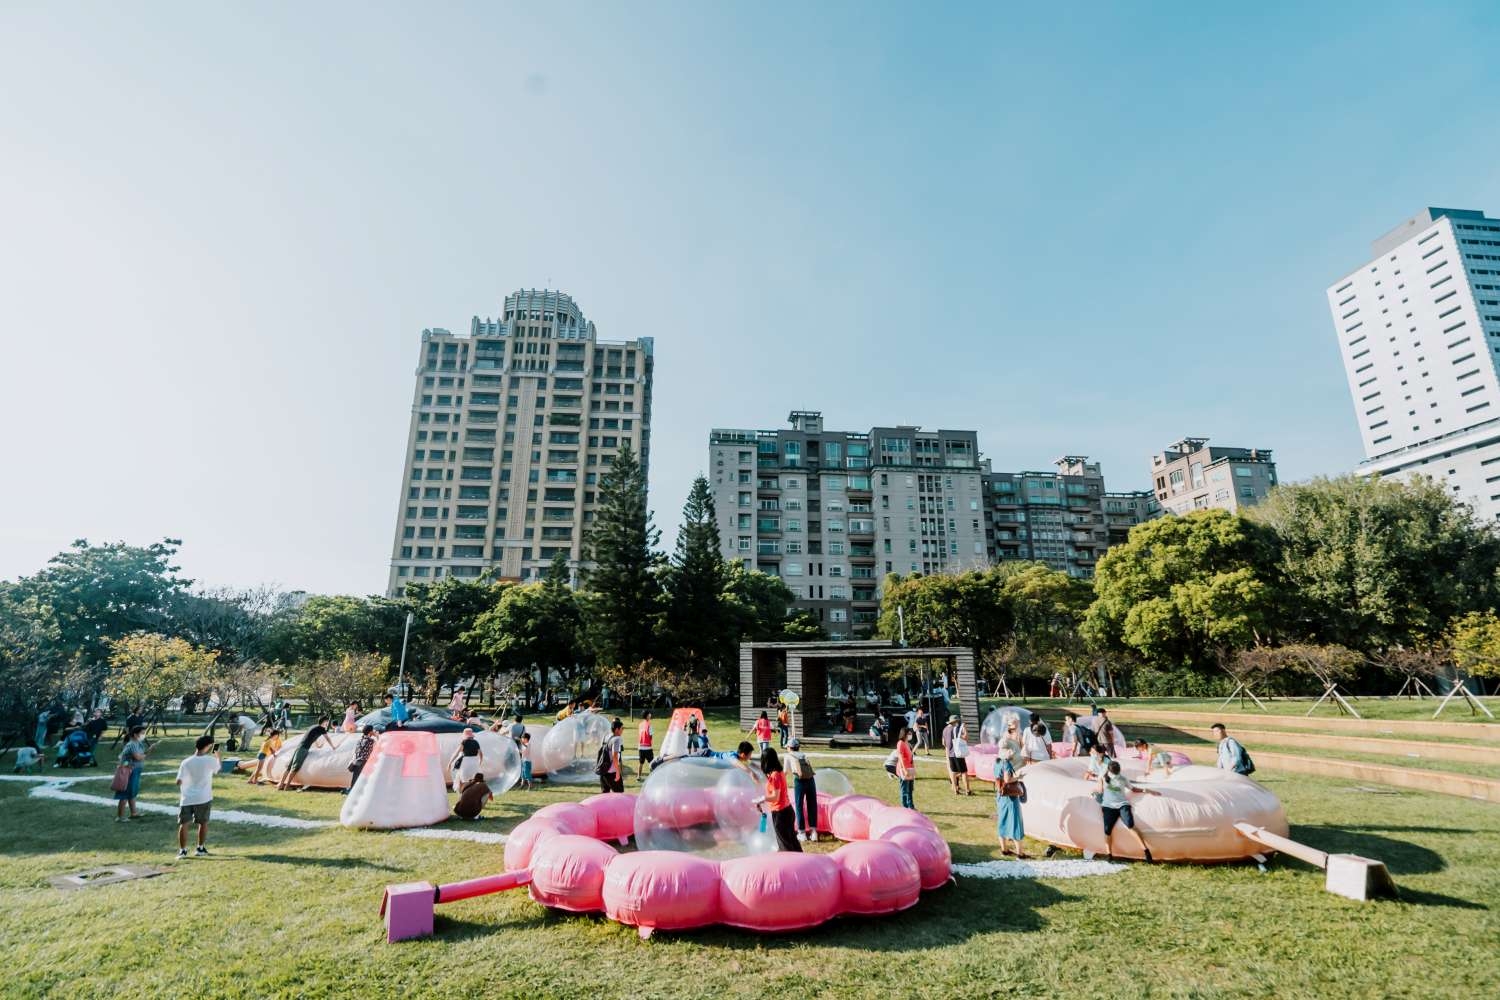 01-1500-新竹公園圓形廣場的「泡泡遊戲場」，有巨型彈跳軟墊可以無限跳耀、空飄泡泡球還能玩傳球等。照片提供衍序規劃設計提供，攝影師Kris Kang.jpg